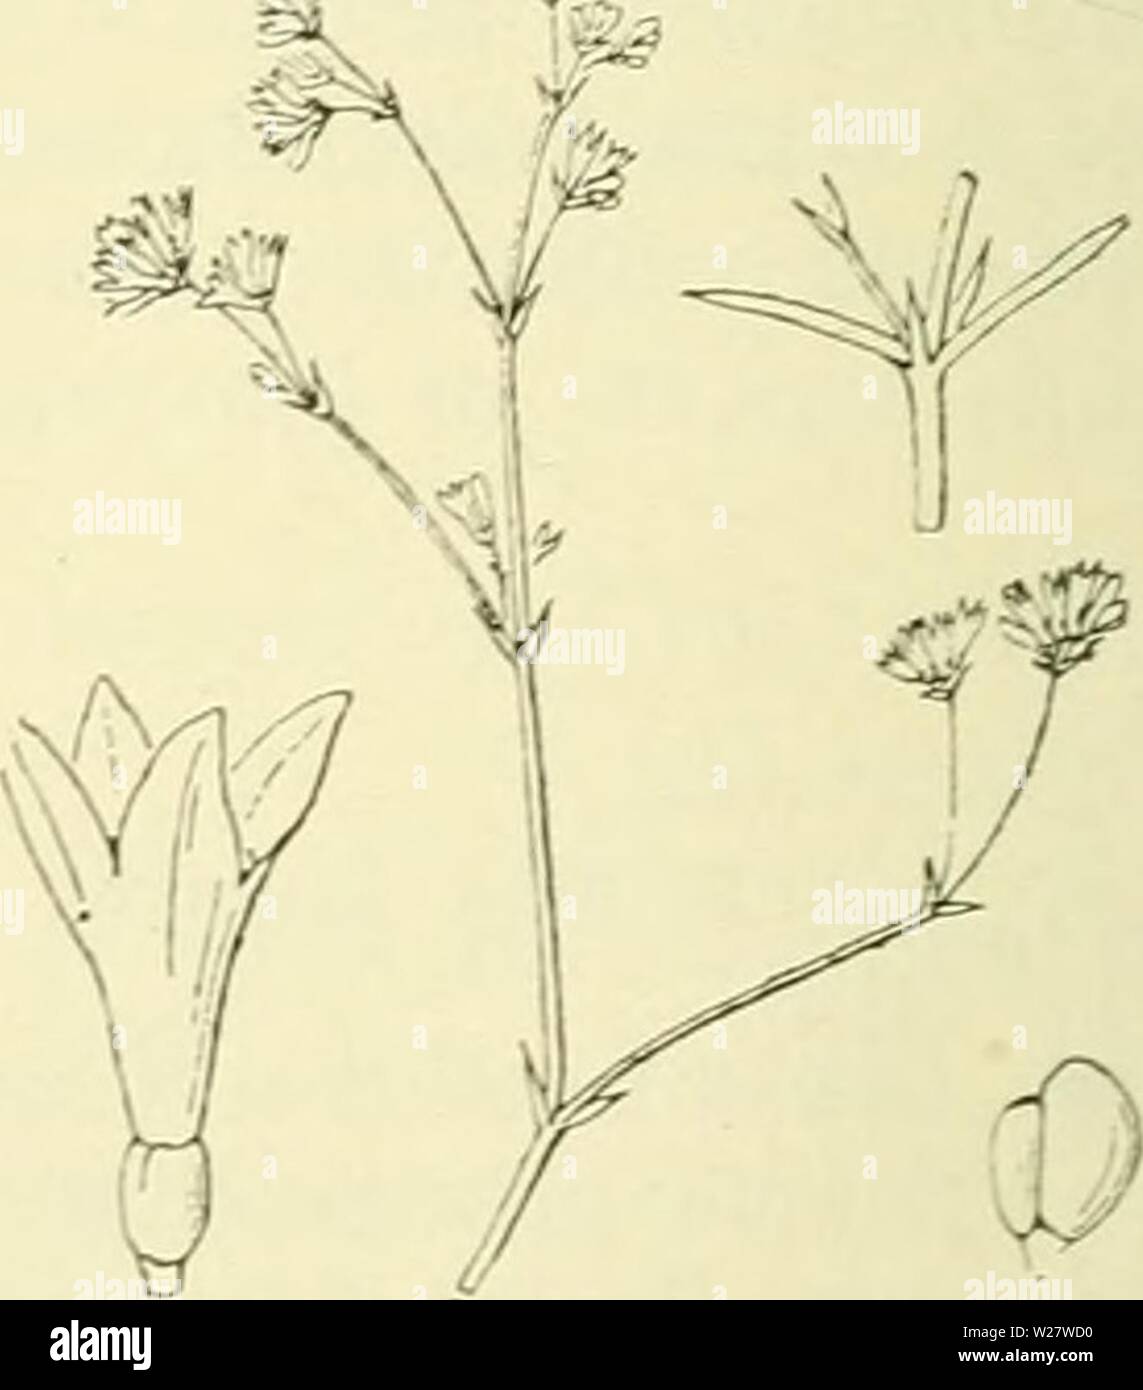 Archive image from page 319 of De flora van Nederland (1909-11). De flora van Nederland  defloravannederl03heuk Year: 1909-11.  Asperula Aparine Fig. 369. de rijpheid der vrucht fijnkorrelig trechtervormig, met een buis, die nauwelijks langer is dan de 4-spletige zoom en is van buiten ruw en vaak rood- achtig. De vruchtjes (fig. 370) zijn onbehaard , fijnkorrelig. 5-22 cM. â . JuniâSeptember. Voorkomen in Europa en in Nederland. De plant komt in Midden- en Zuid-Europa op droge, dorre plaatsen, vooral op kalkgrond voor. Zij is bij ons bij Zwolle, Katwijk, Velsen, Utrecht en 's-Gravenhage gevond Stock Photo